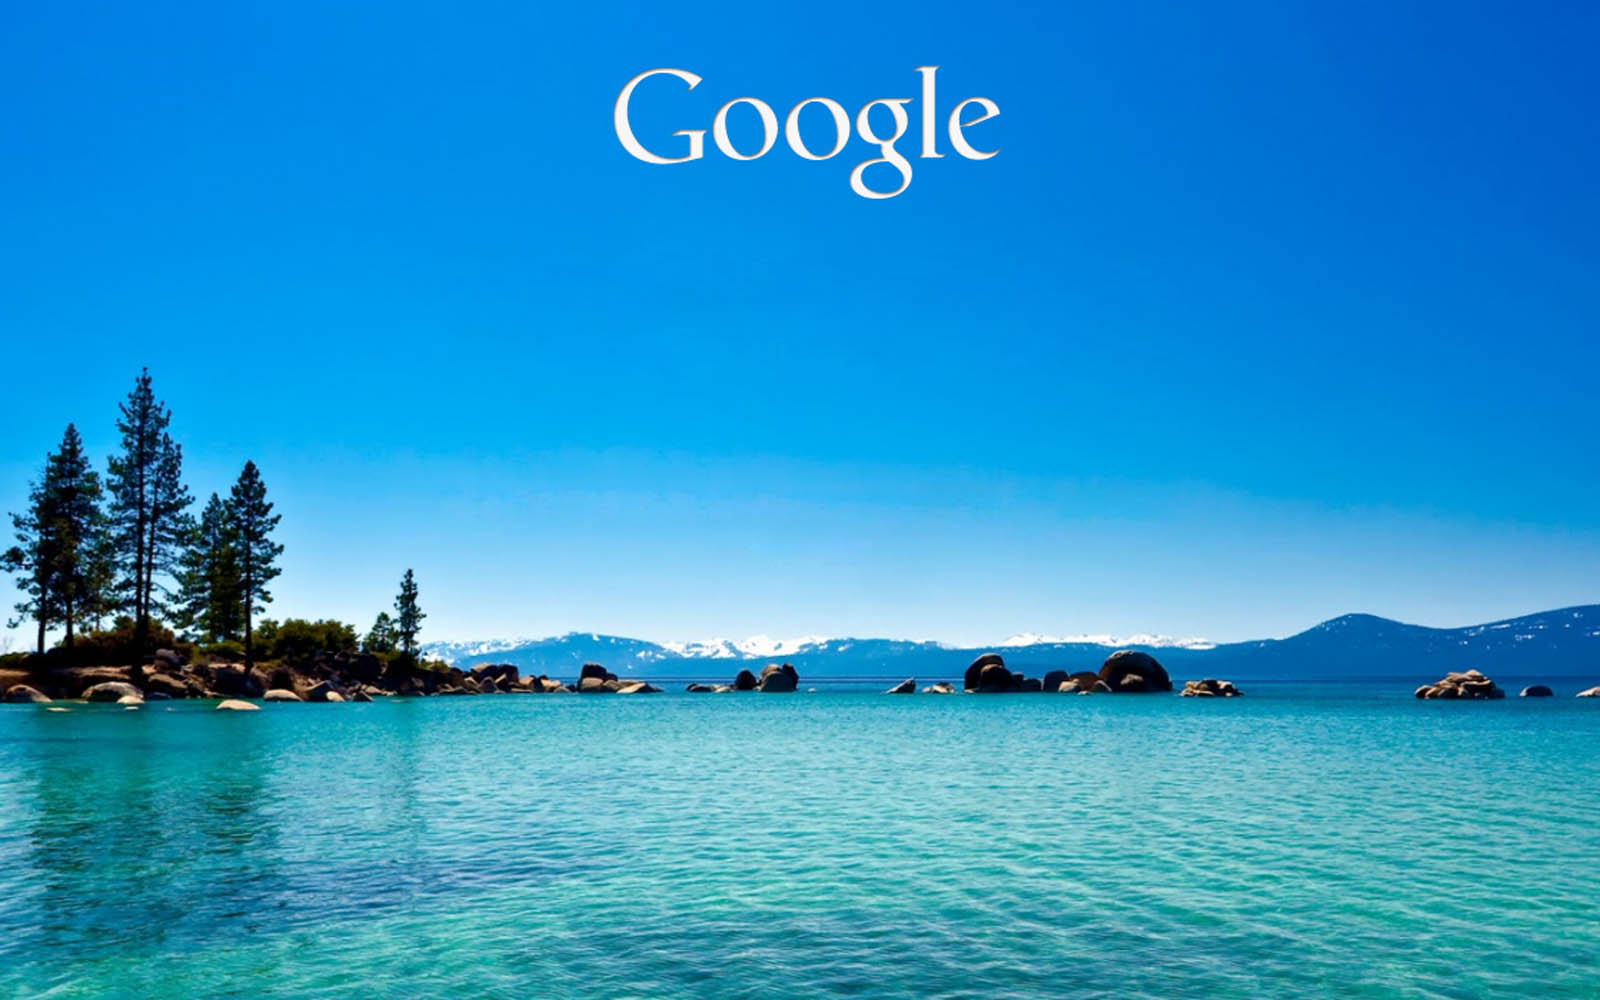 Google Background Image On